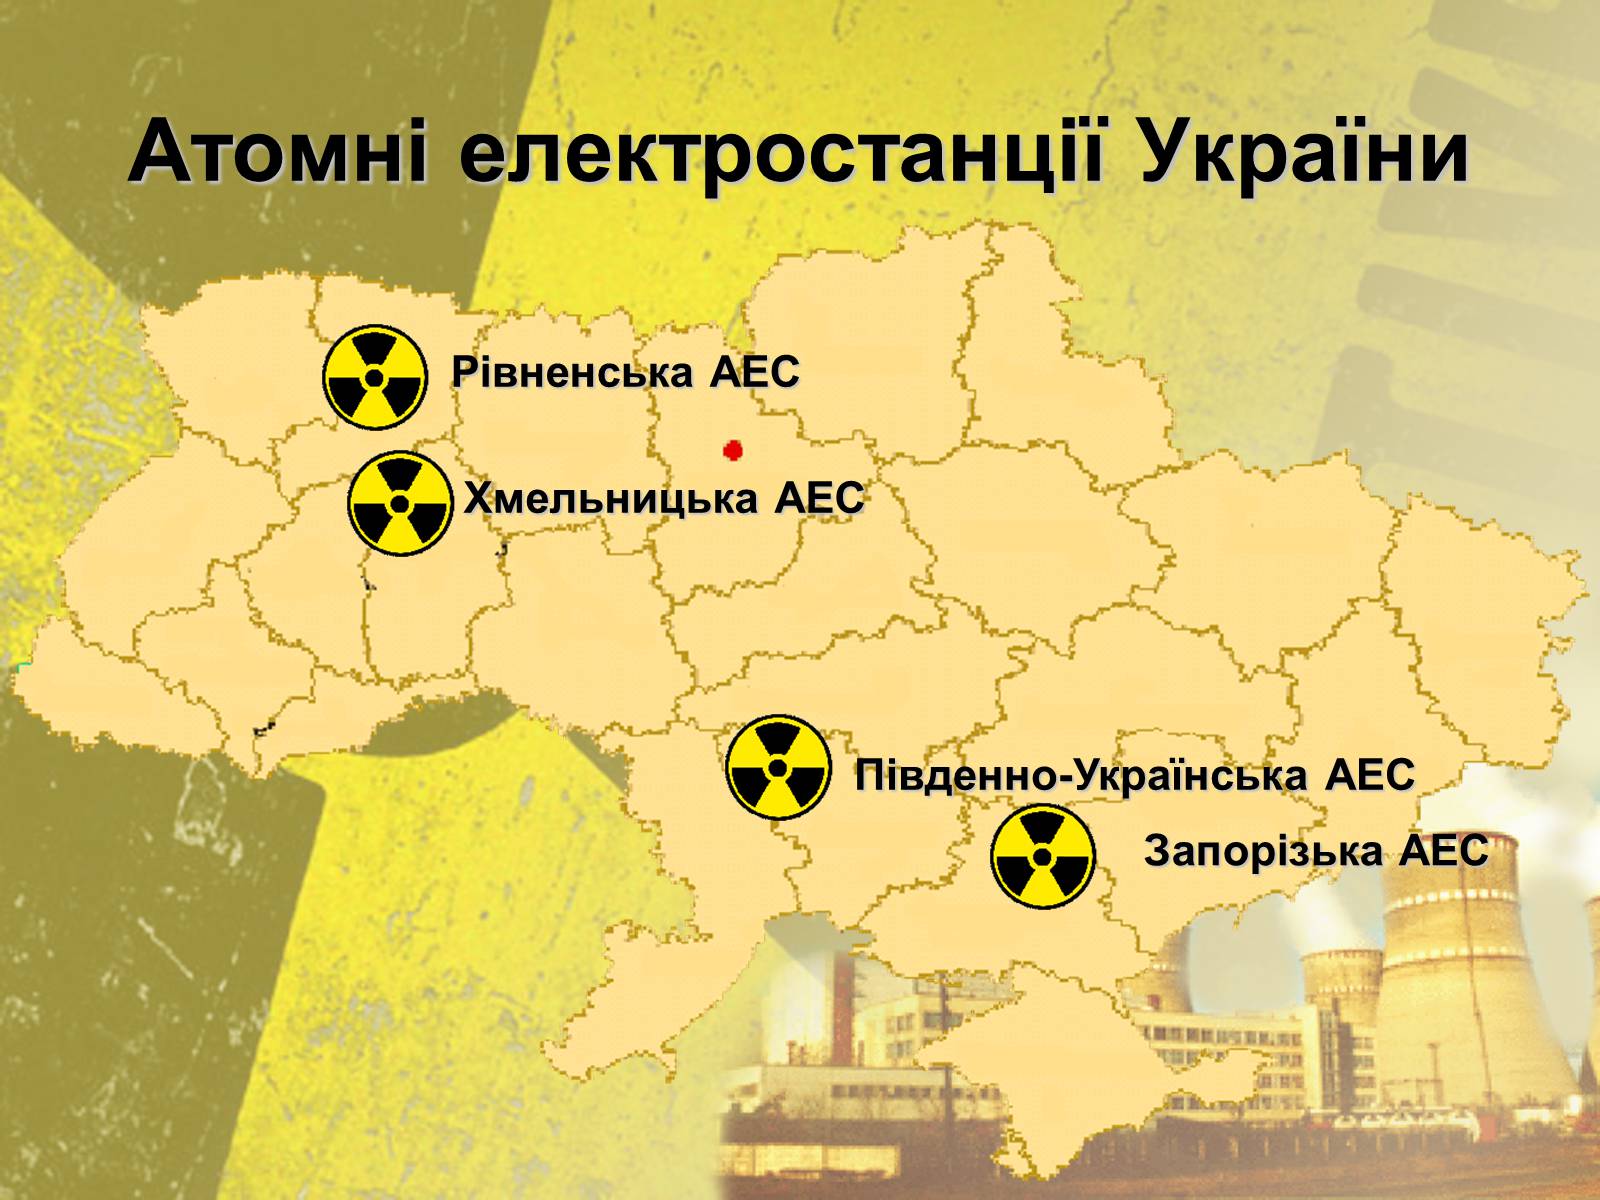 Запорожская аэс на карте где расположена. Атомные станции Украины на карте. Атомная Энергетика Украины атомные электростанции Украины. Атомные электростанции Украины на карте. Электростанции АЭС Украине карта.